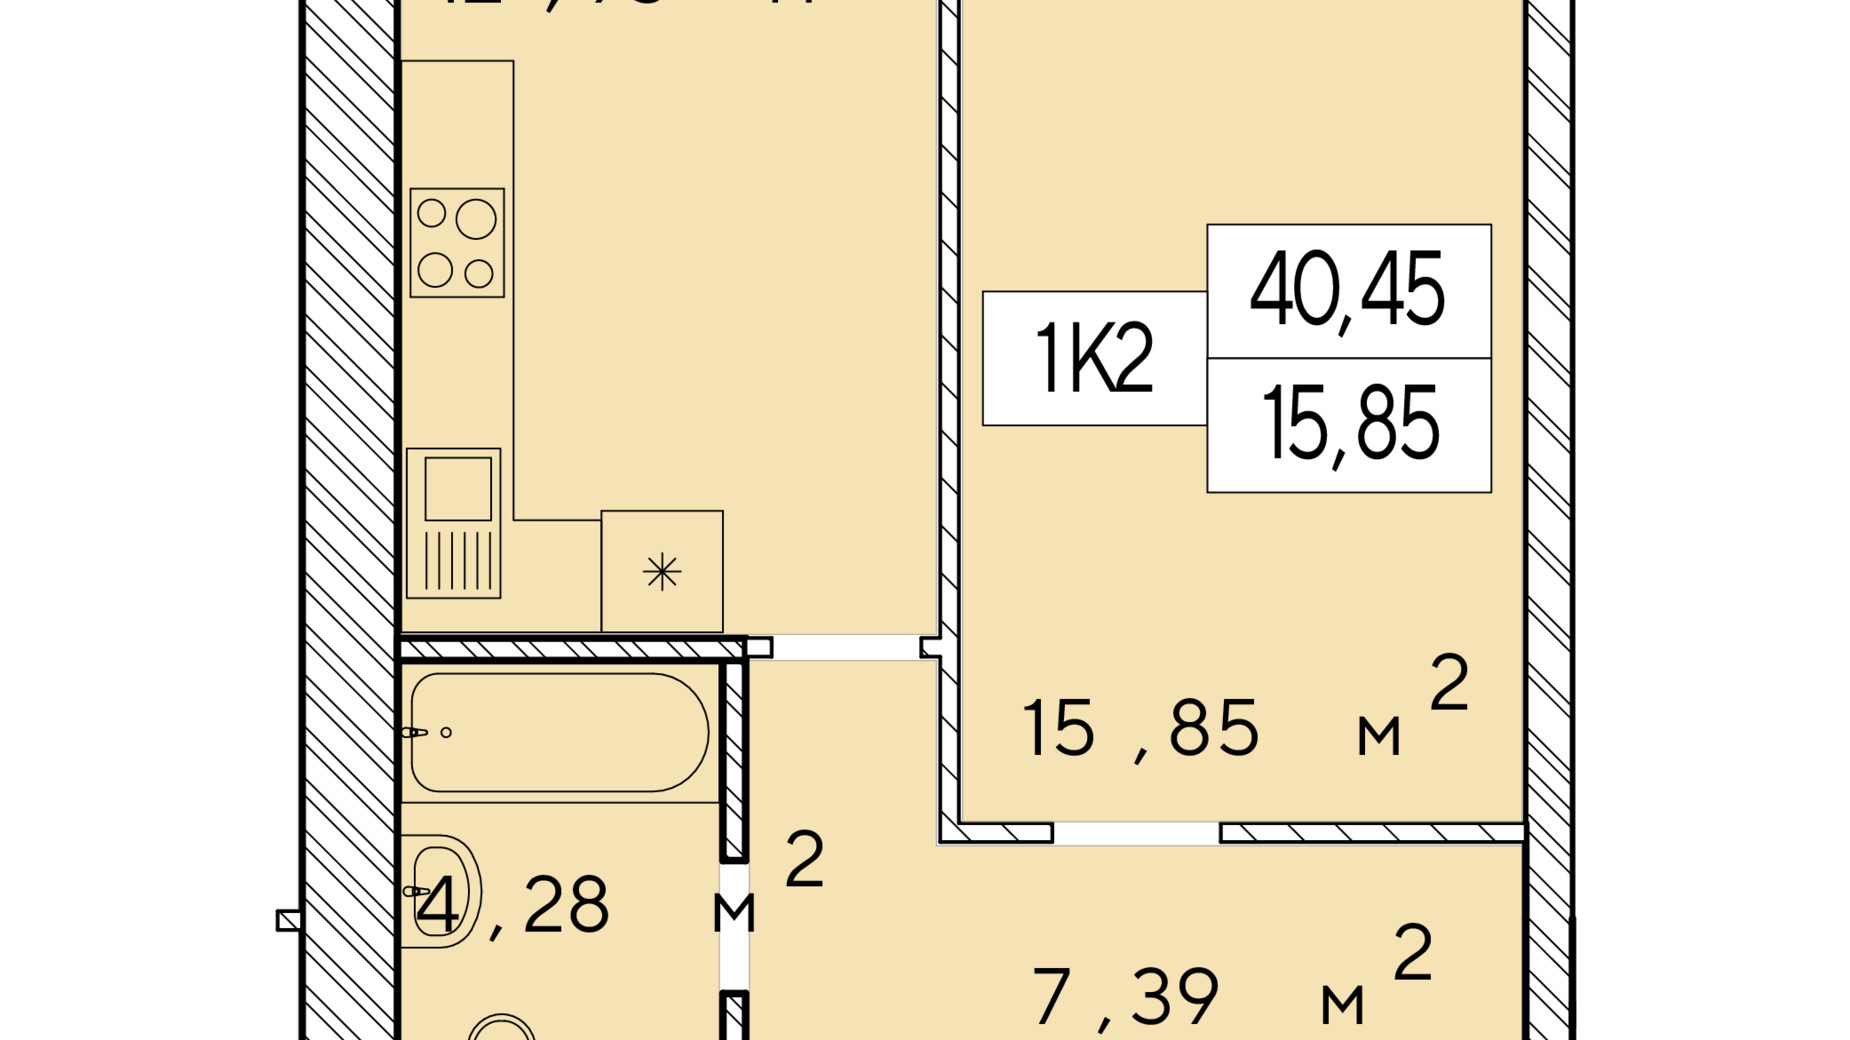 Планировка 1-комнатной квартиры в ЖК Фаворит Premium 40.45 м², фото 548473